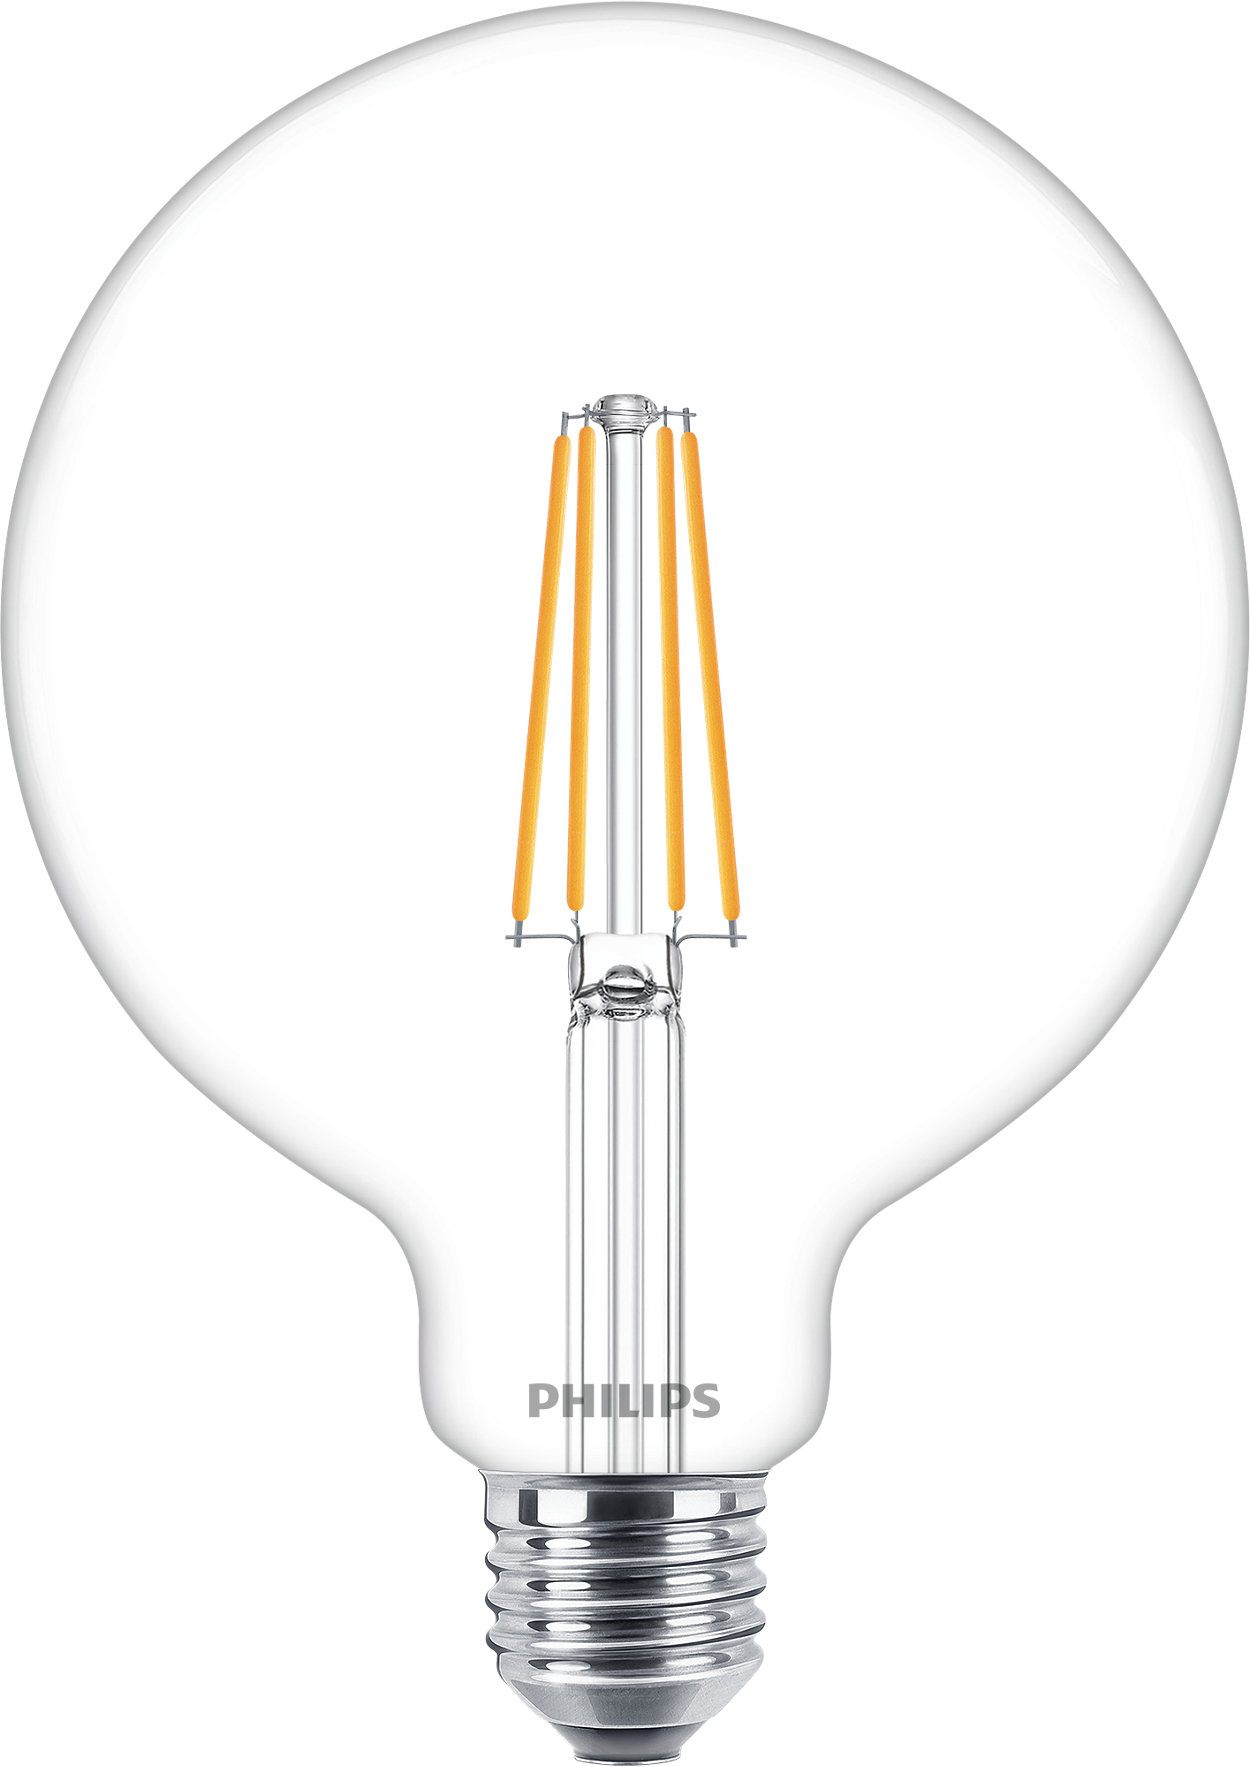 Regulovatelné skleněné LED zdroje s nižší spotřebou energie